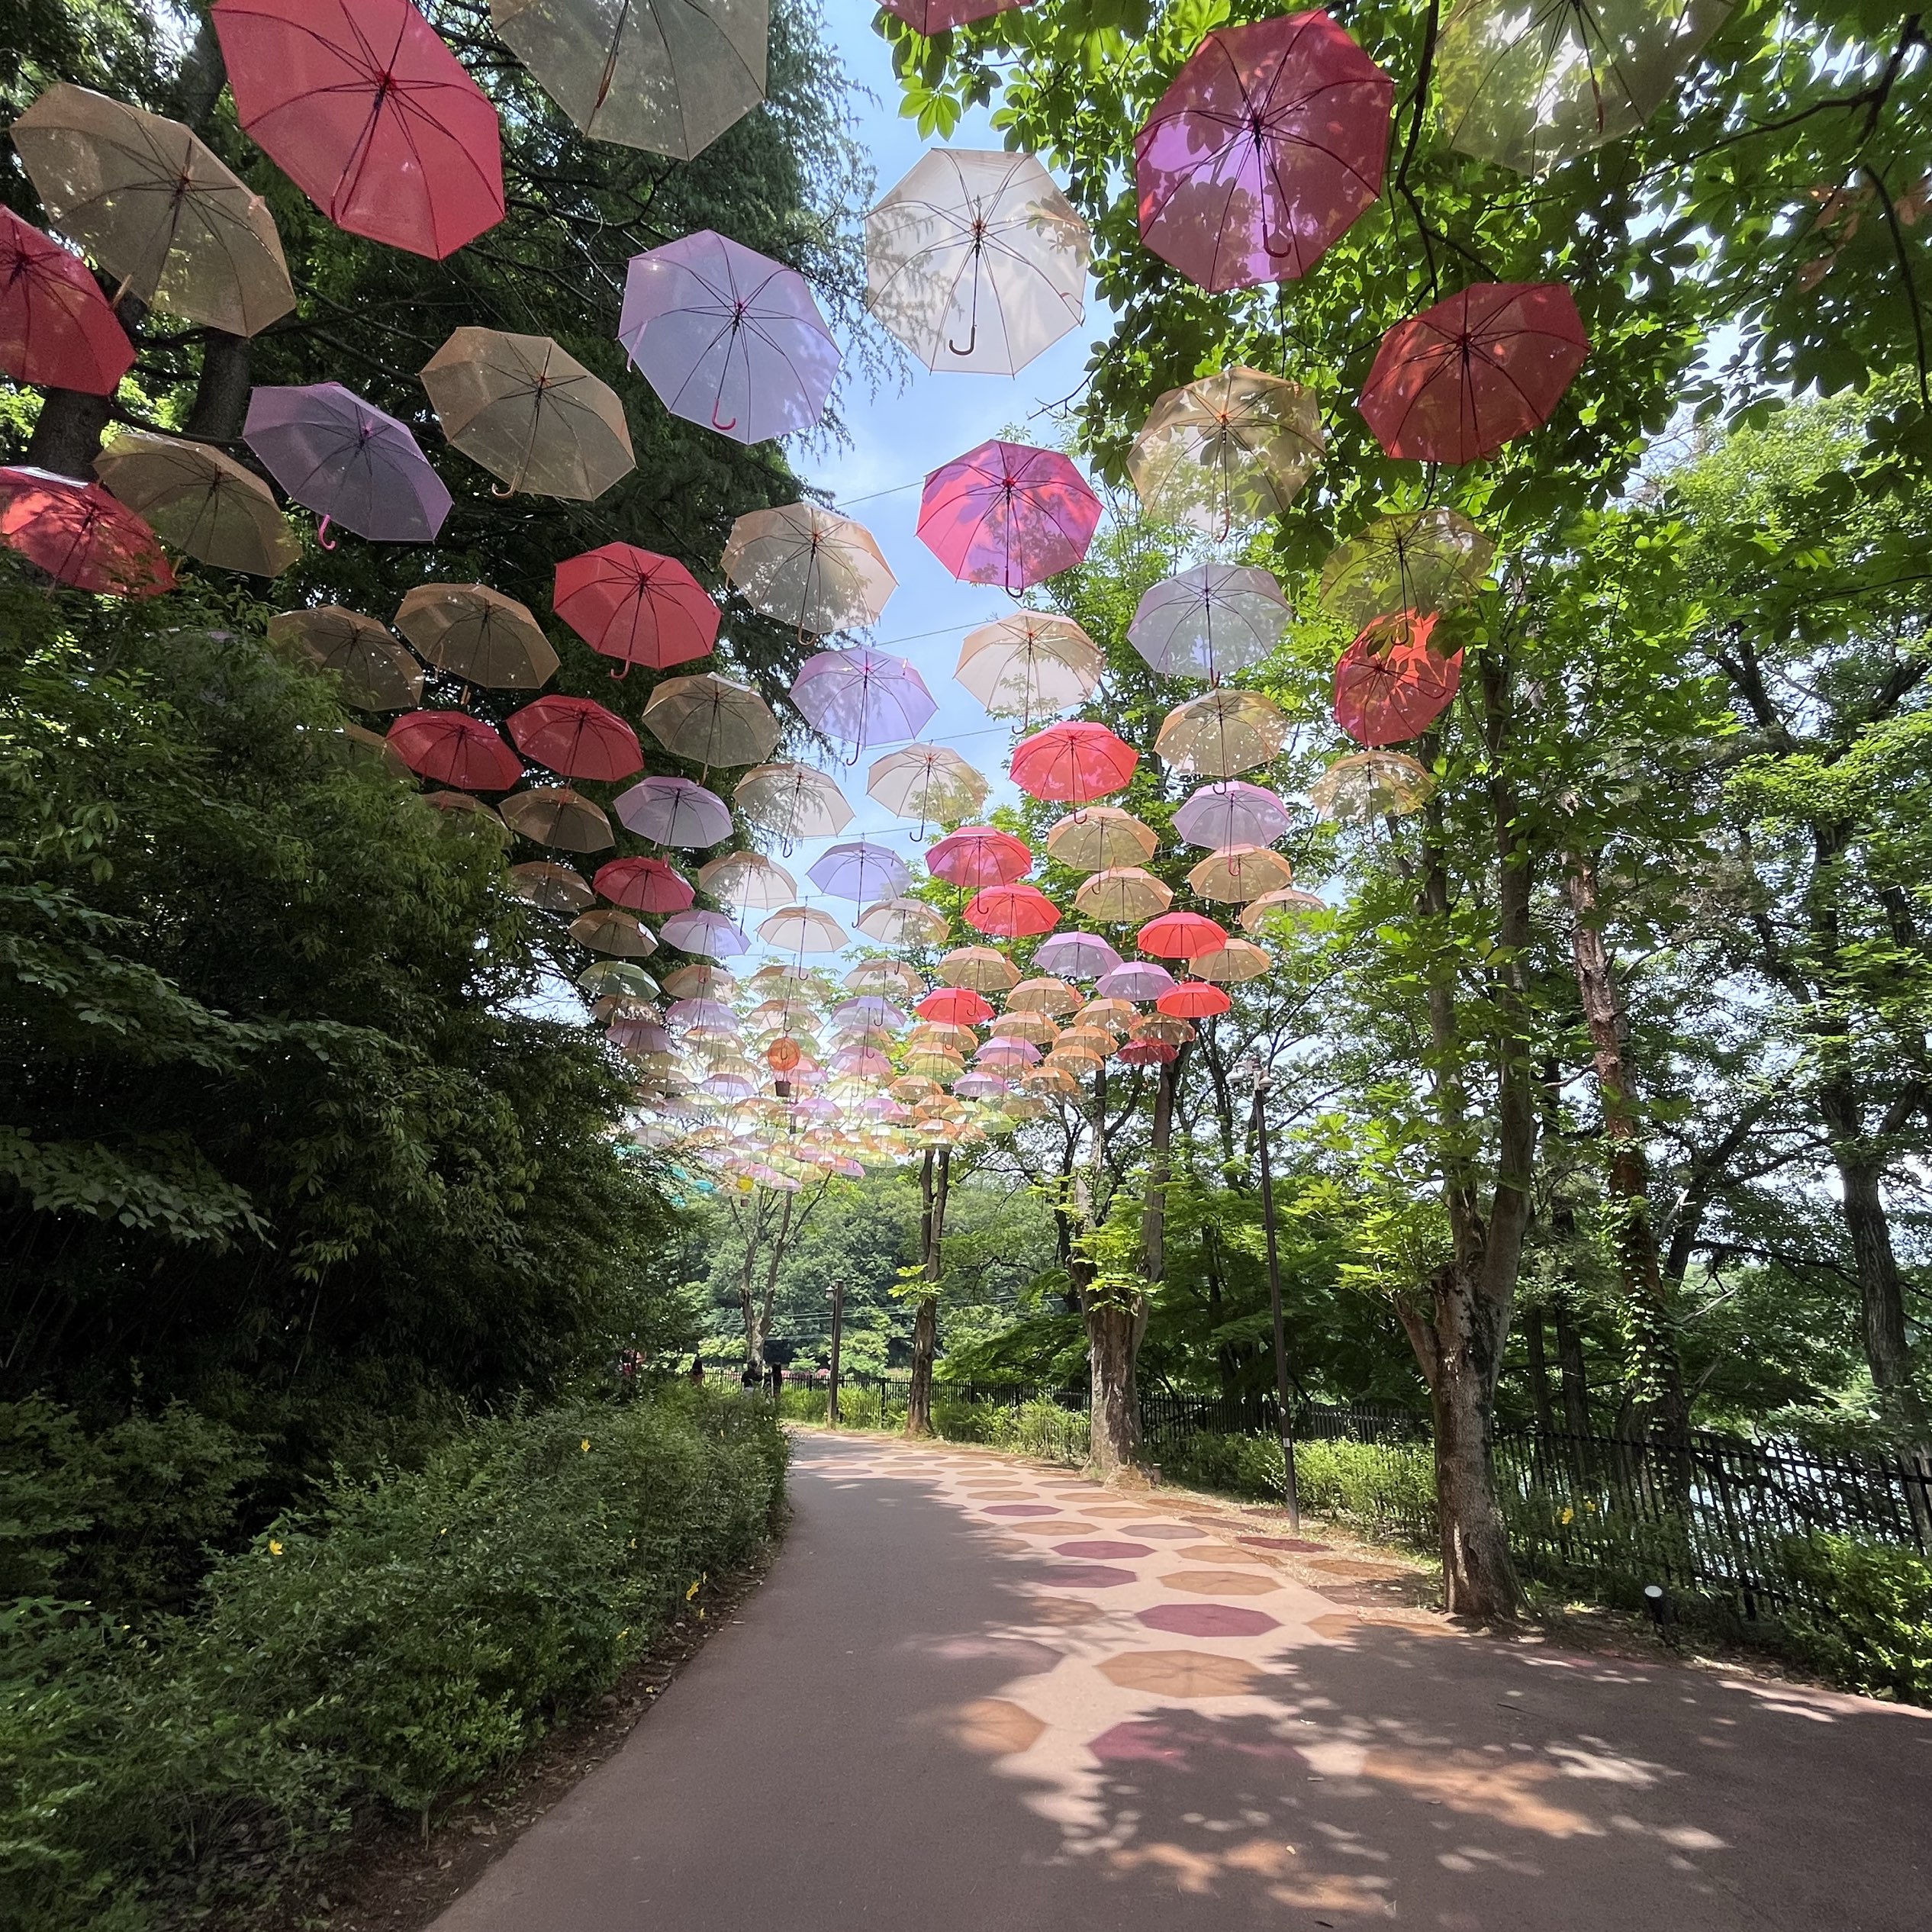 [埼玉]姆明谷公园的雨伞活动☂️